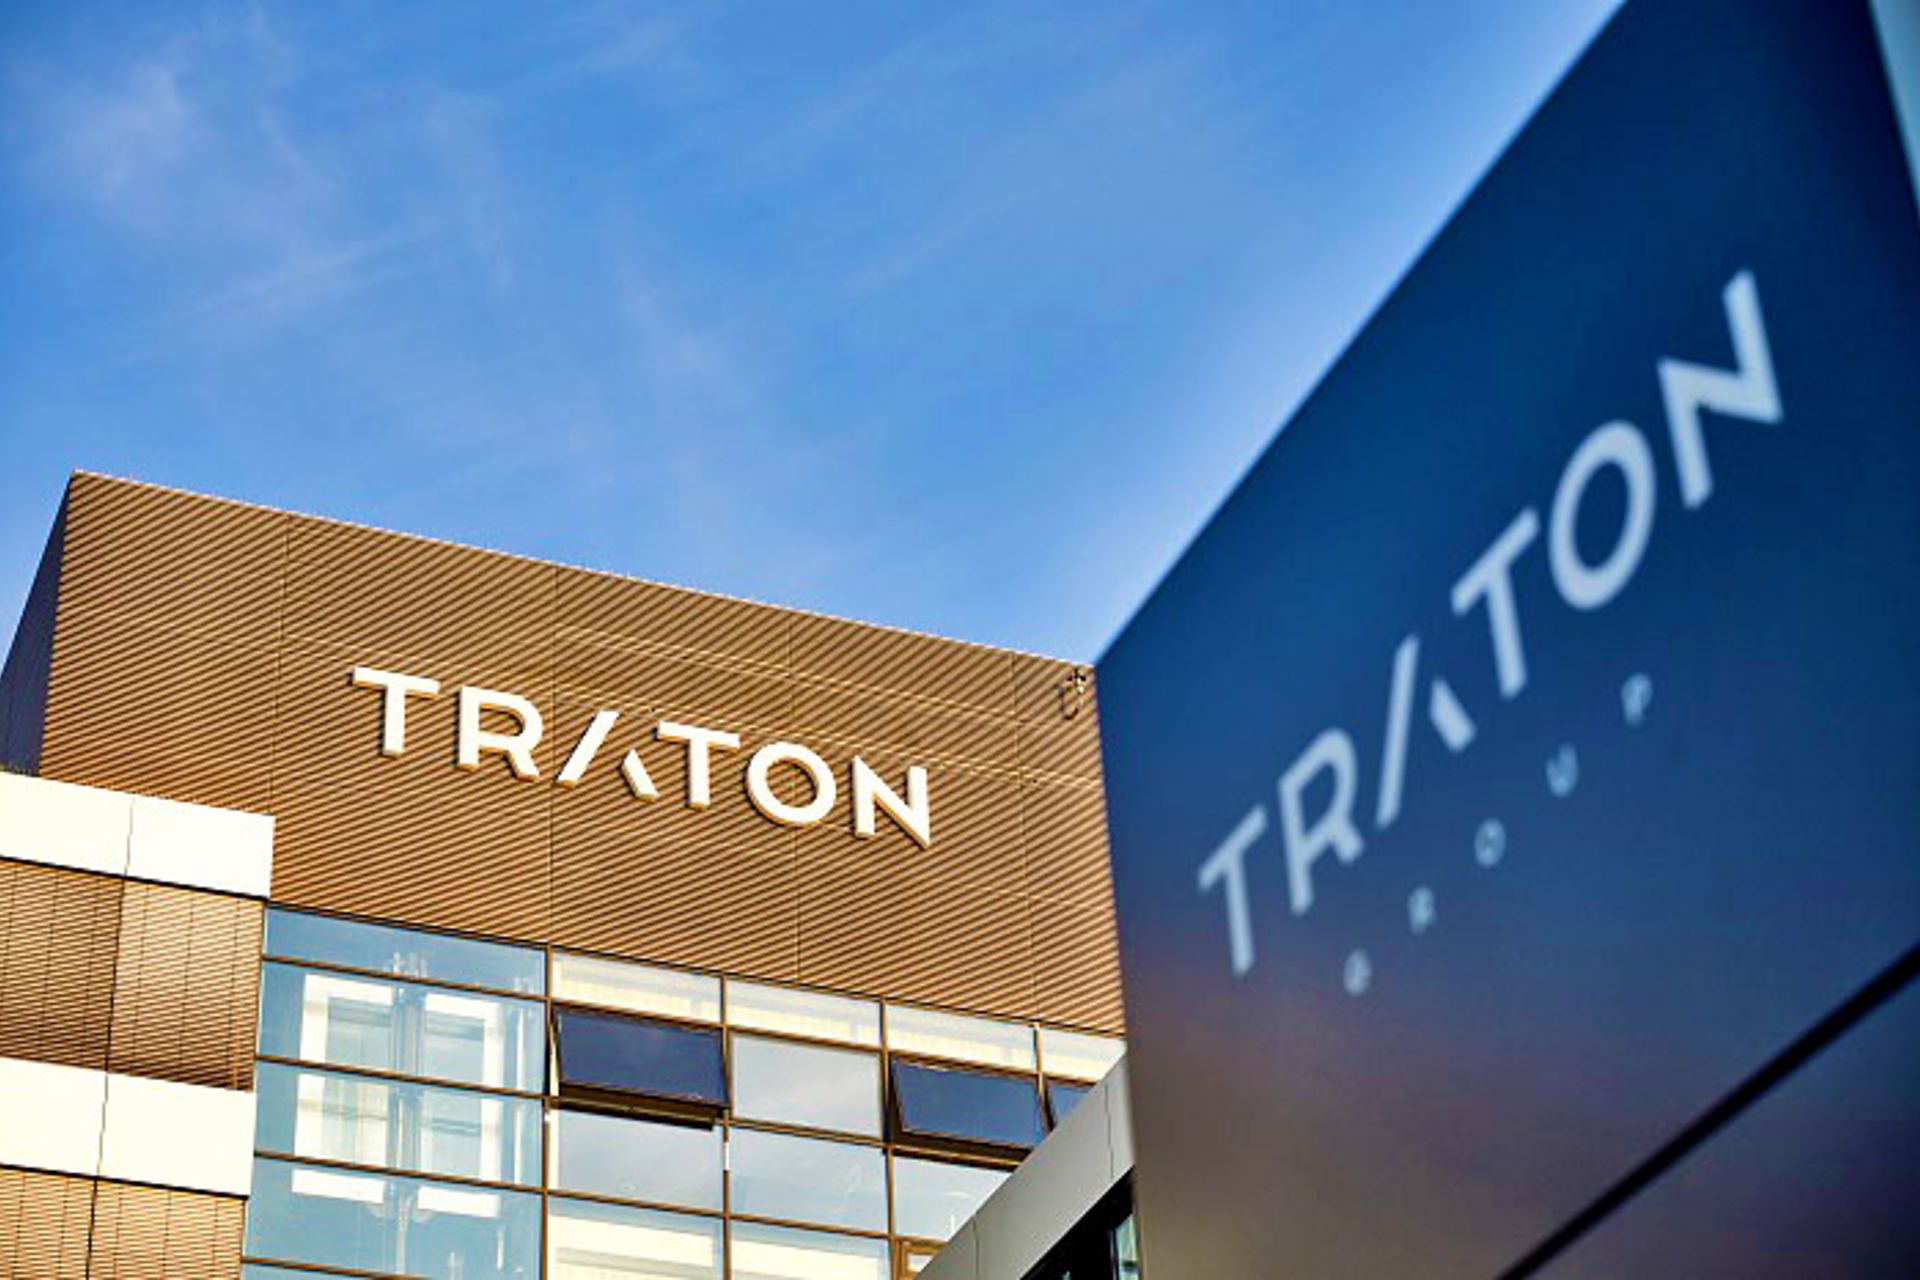 Gebäude mit TRATON Logo